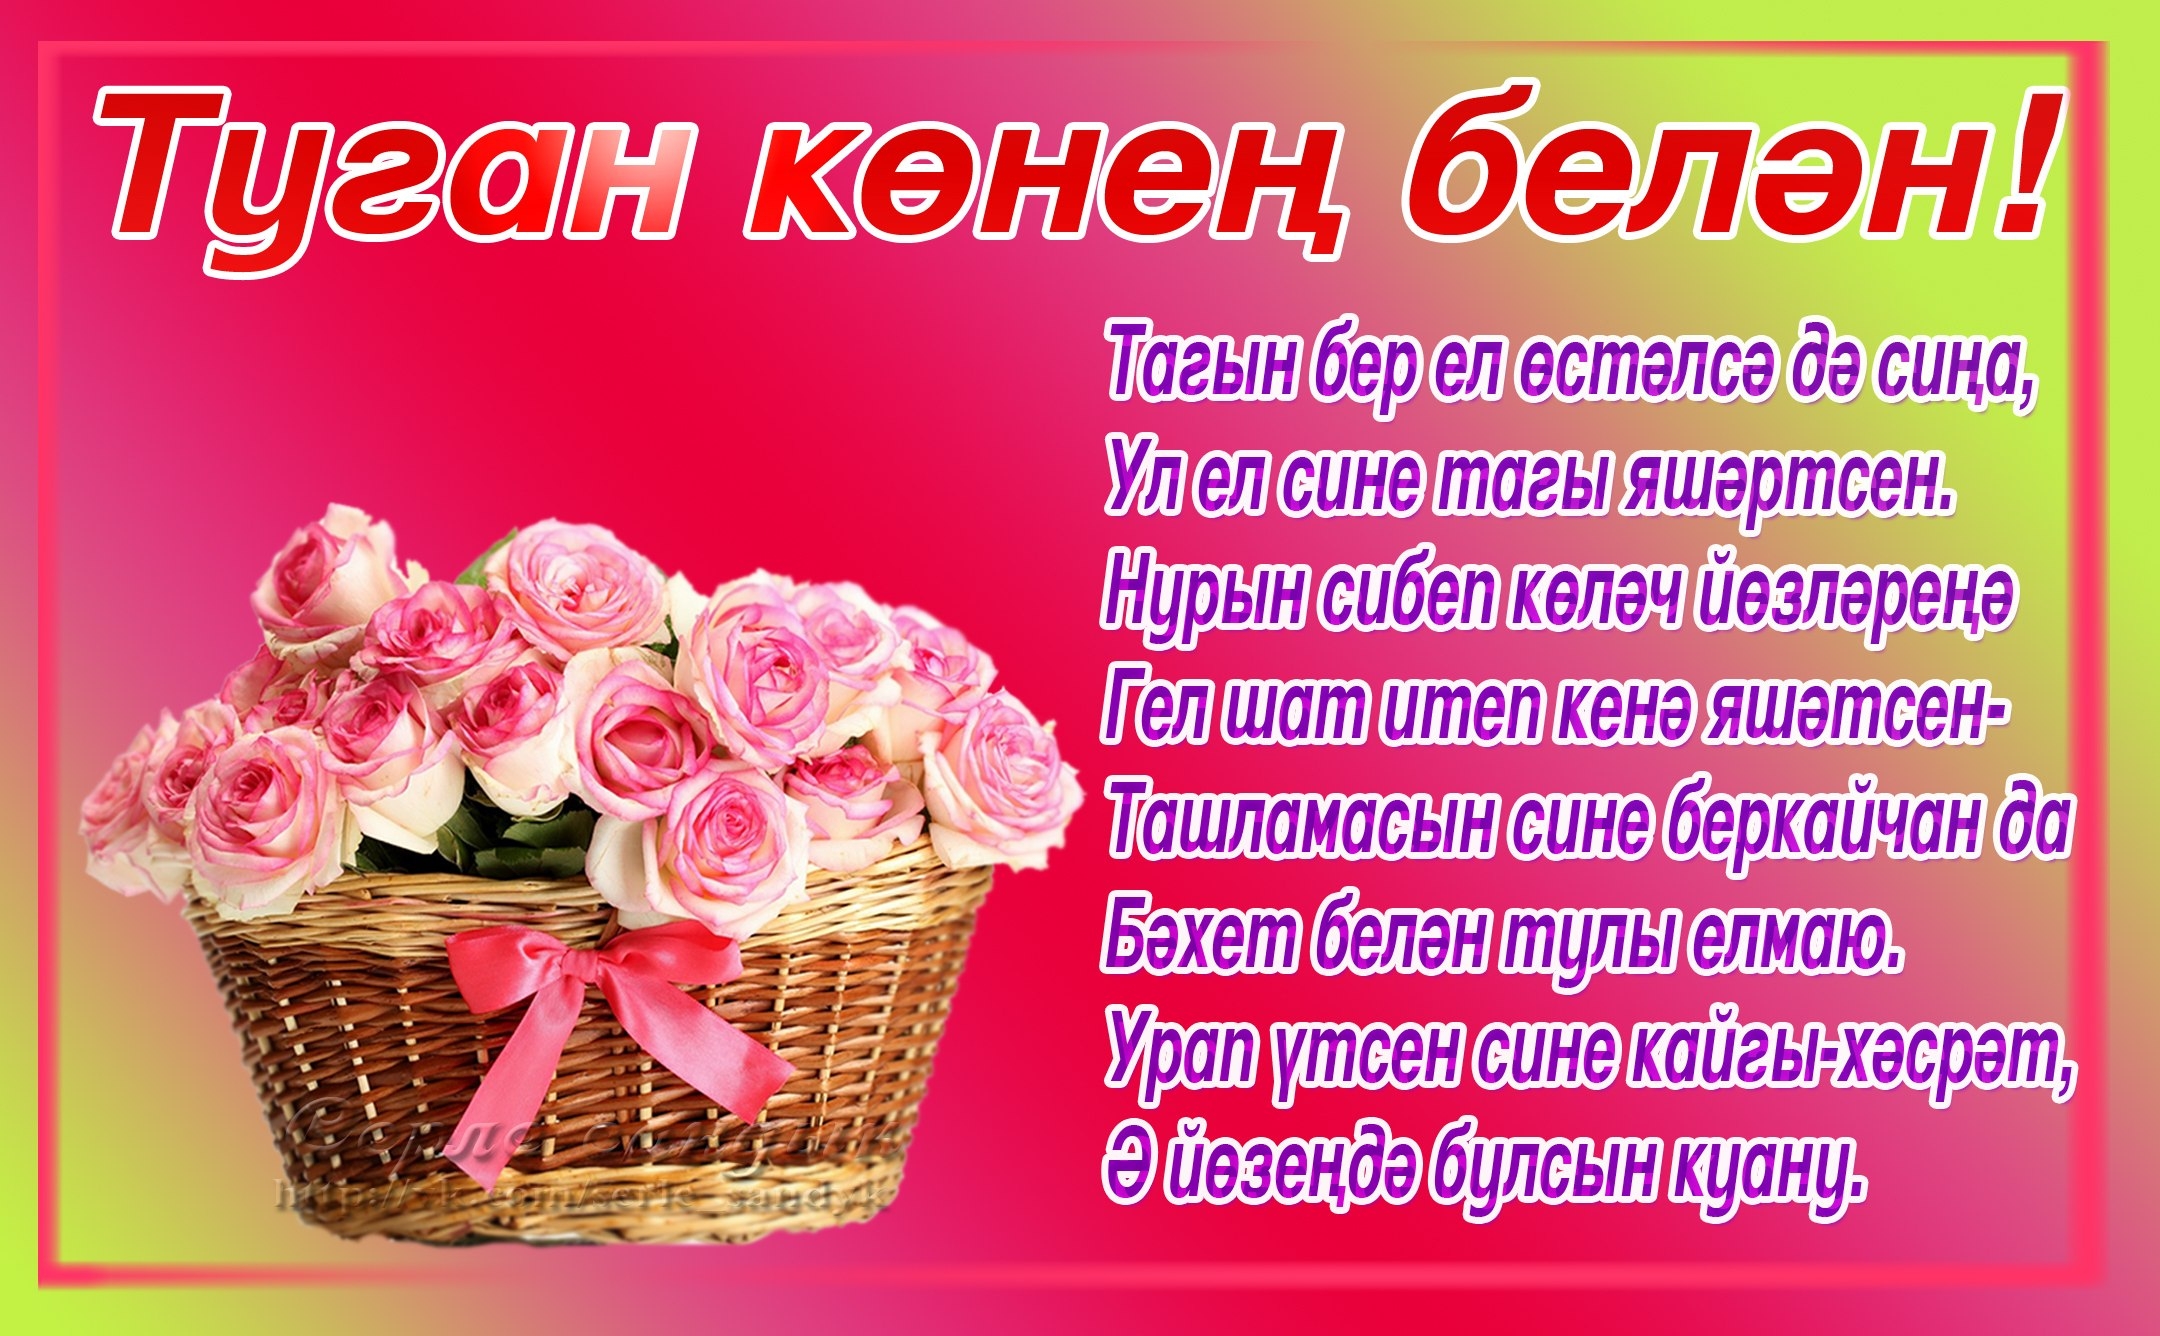 Поздравление на татарском языке пожелания